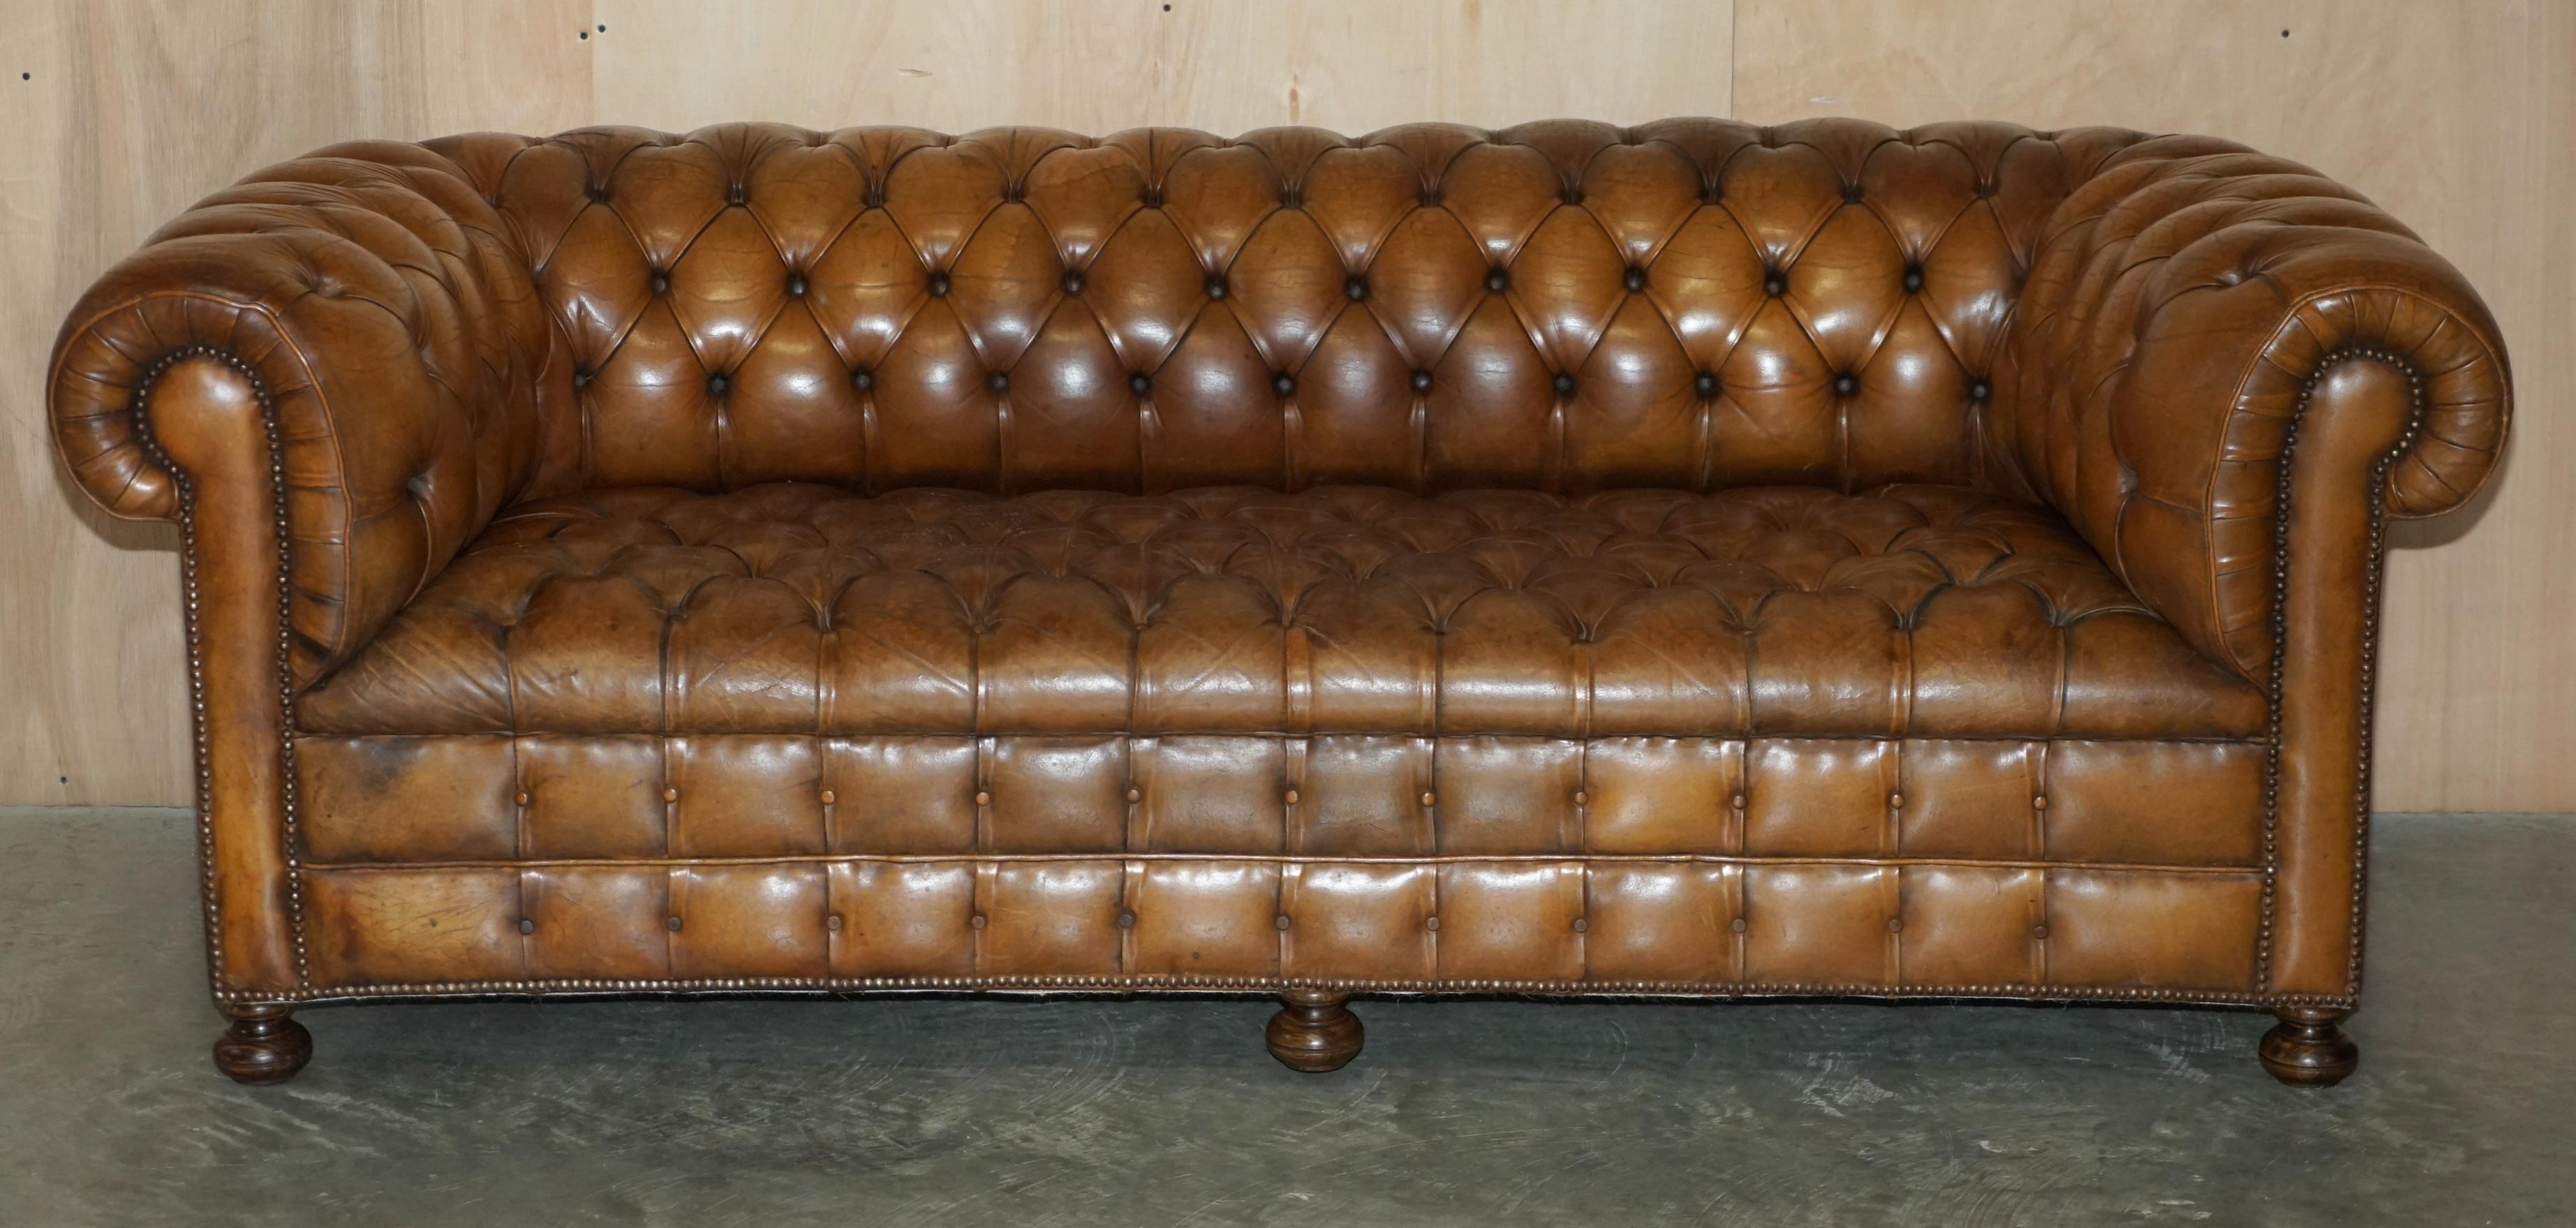 Nous avons le plaisir de proposer à la vente ce canapé club Chesterfield original des années 1950 en cuir brun cigare, légèrement restauré, avec une base entièrement boutonnée et des pieds tournés en noyer massif.

Il s'agit d'une trouvaille